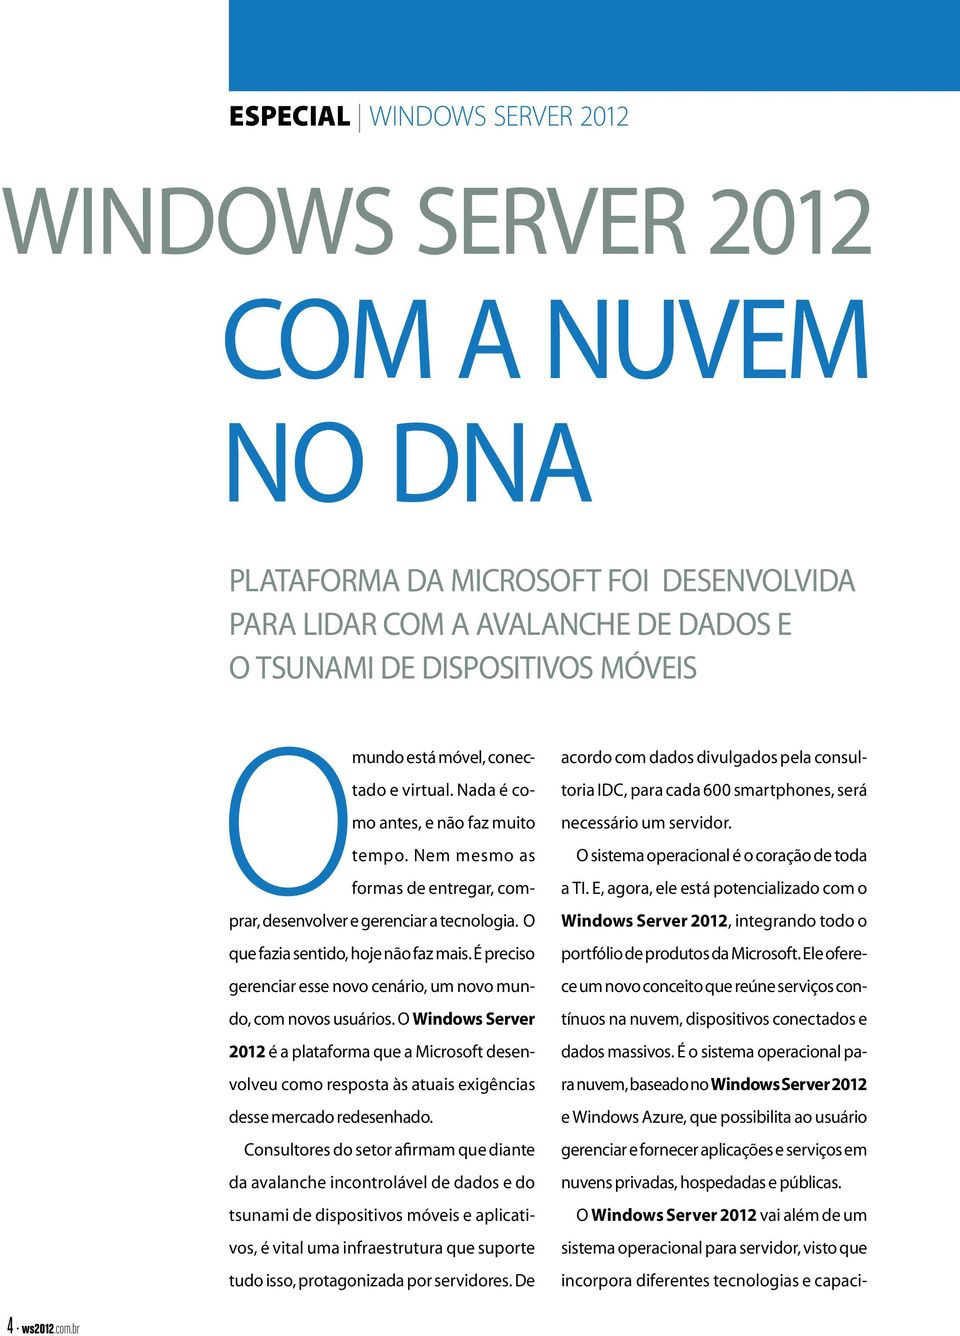 É preciso gerenciar esse novo cenário, um novo mundo, com novos usuários. O Windows Server 2012 é a plataforma que a Microsoft desenvolveu como resposta às atuais exigências desse mercado redesenhado.